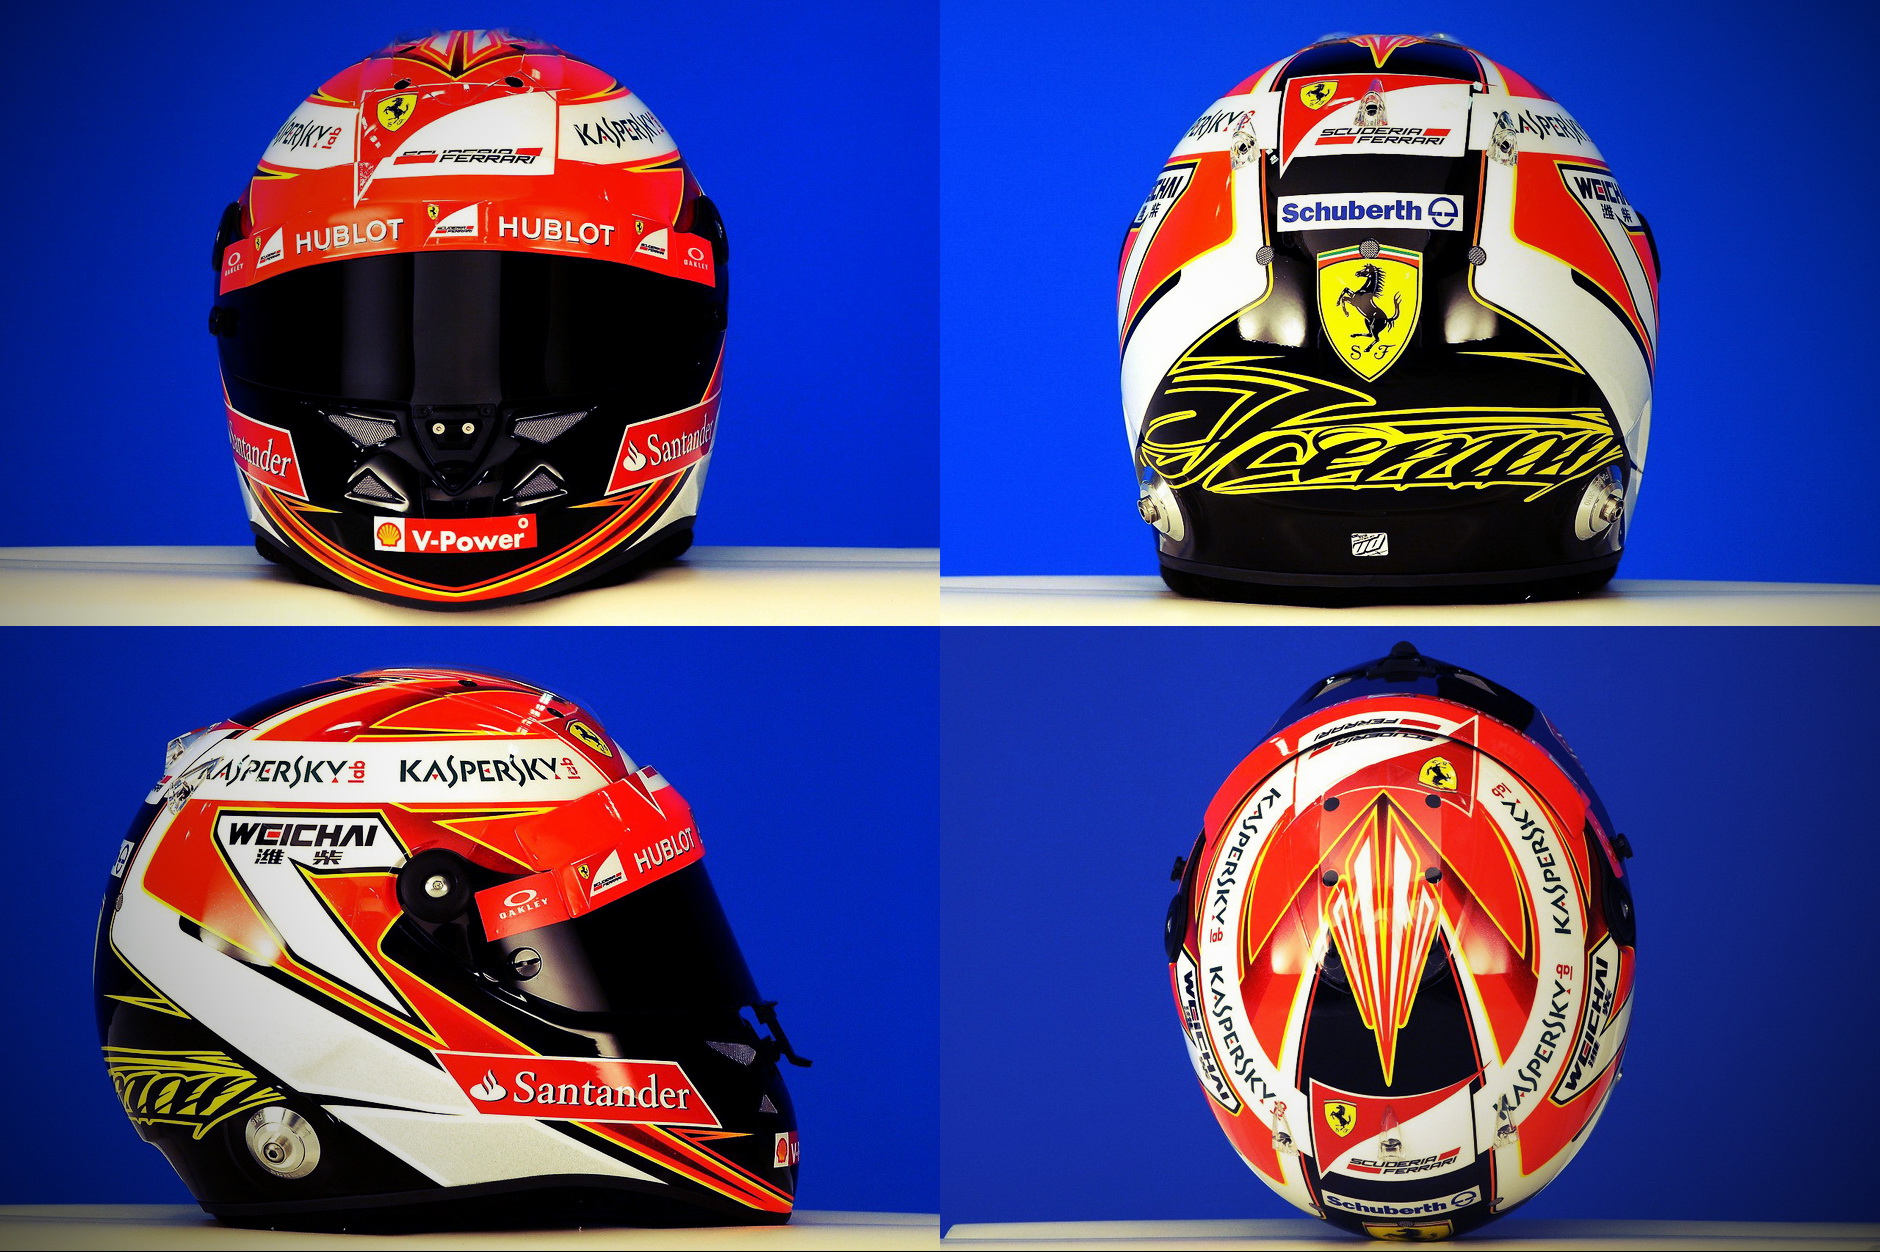 Шлем Кими Райкконена на сезон 2014 года | 2014 helmet of Kimi Raikkonen